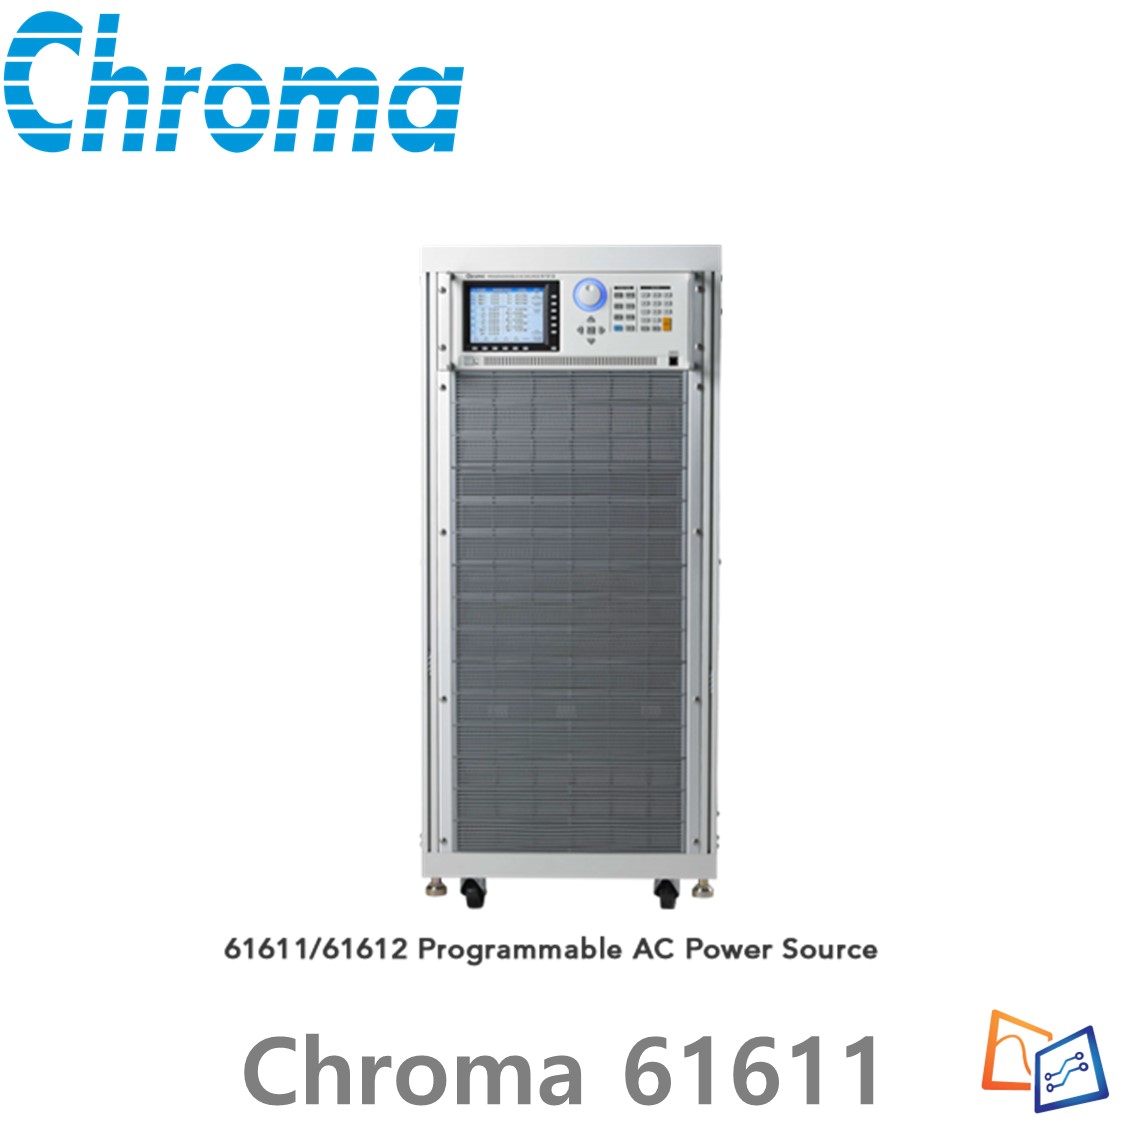 [ Chroma 61604 ] 프로그래머블 AC전원 공급기 크로마 61600 series